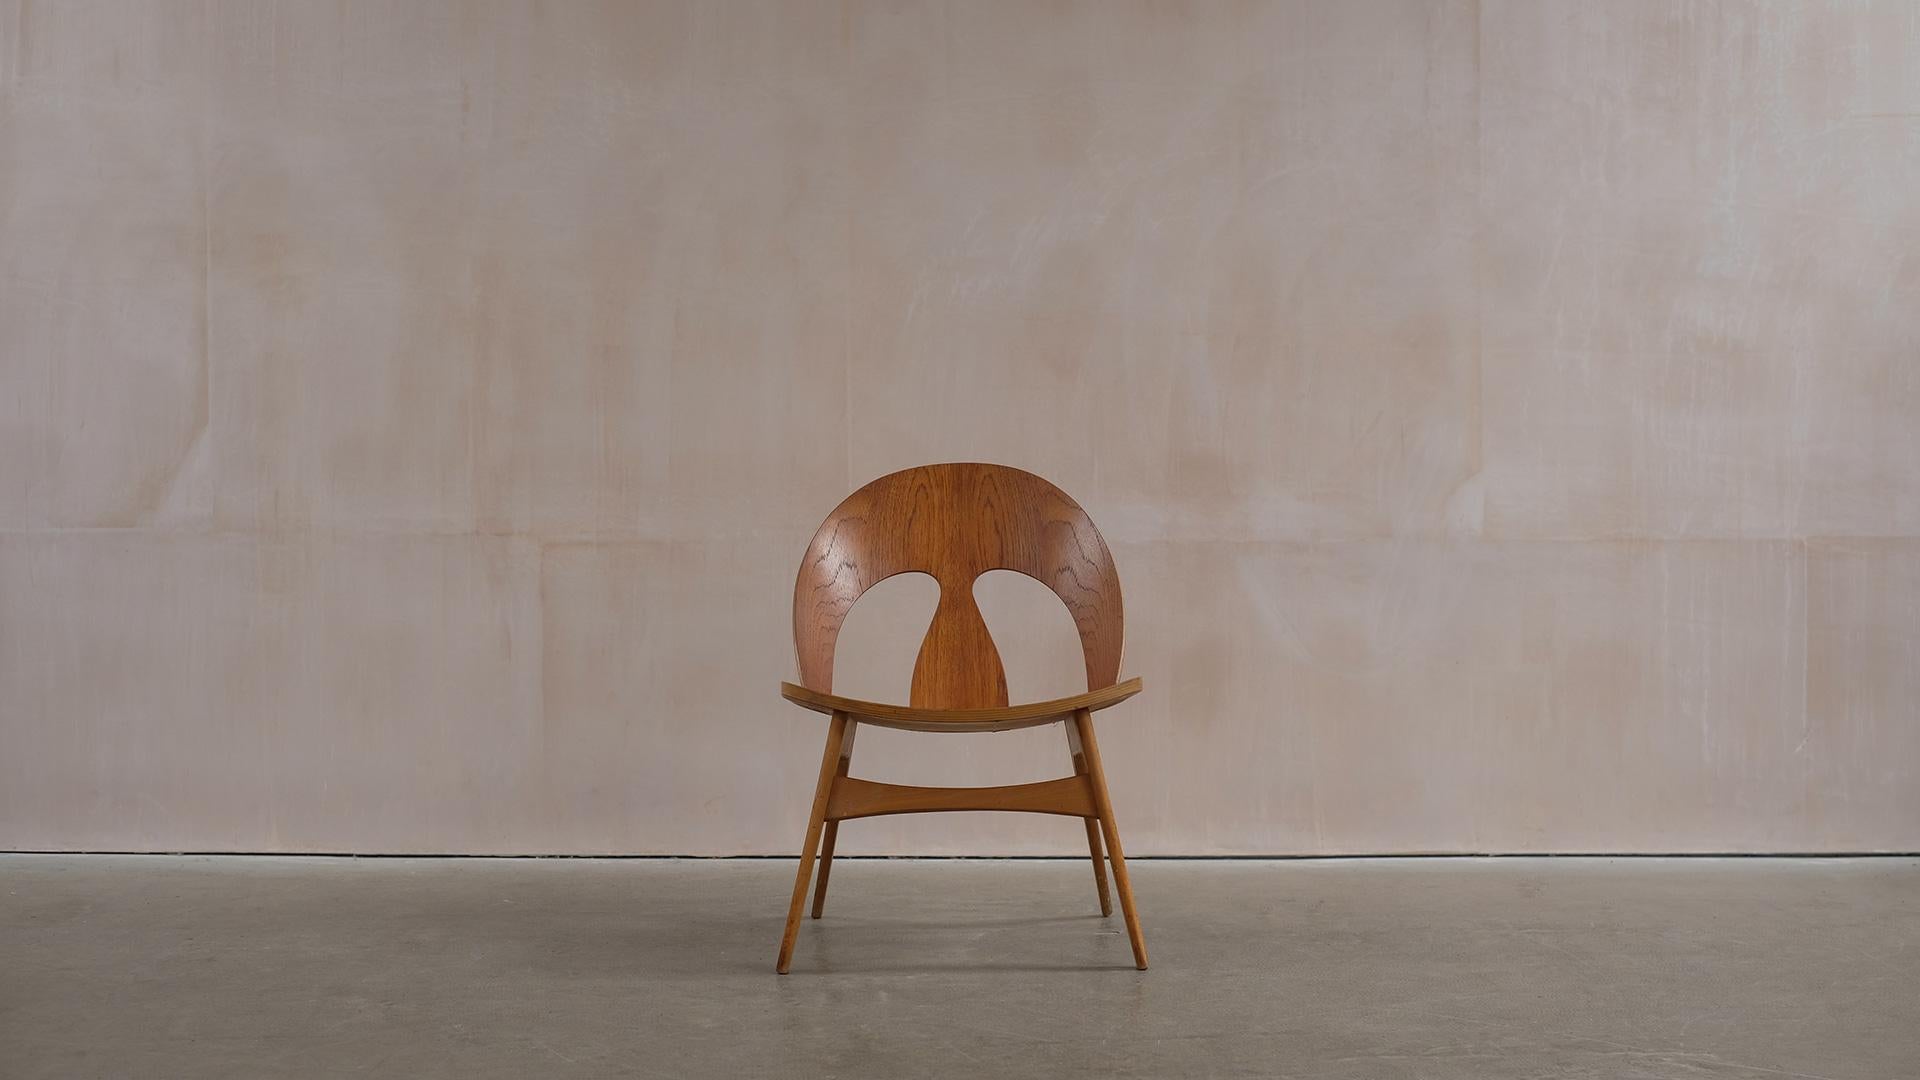 Chaise coquille rarissime en hêtre massif et en contreplaqué de teck sculptural, conçue par Borg pour l'ébéniste Erhard Rasmussen, 1949 Danemark. Magnifique chaise danoise classique rarement disponible. 